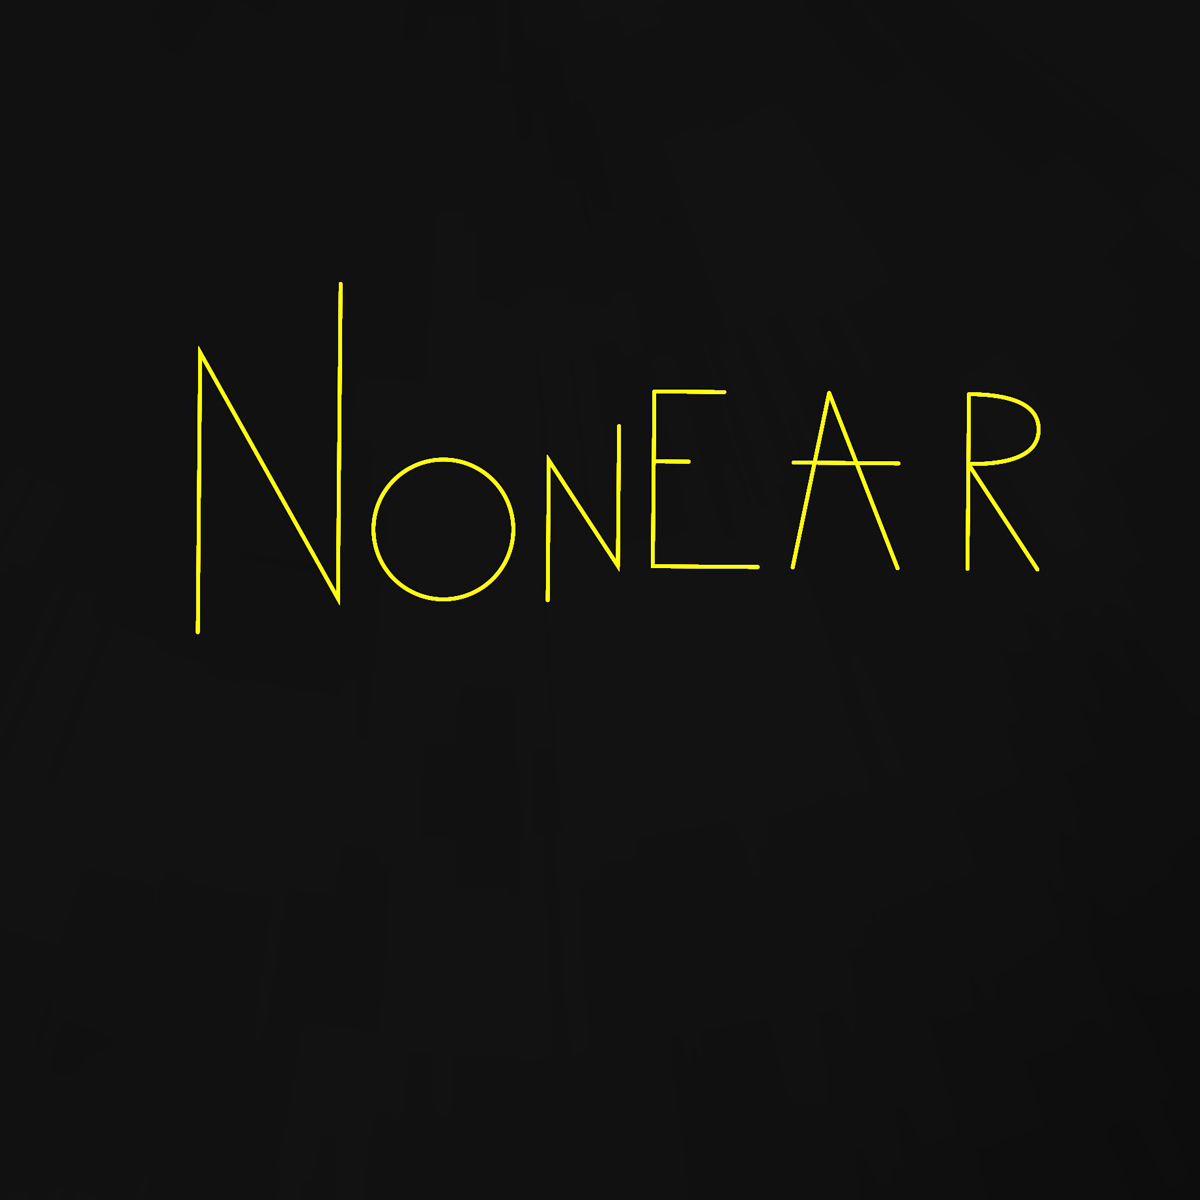 NONEAR - Enceinte - Projet personnel - Juin 2022 - 2